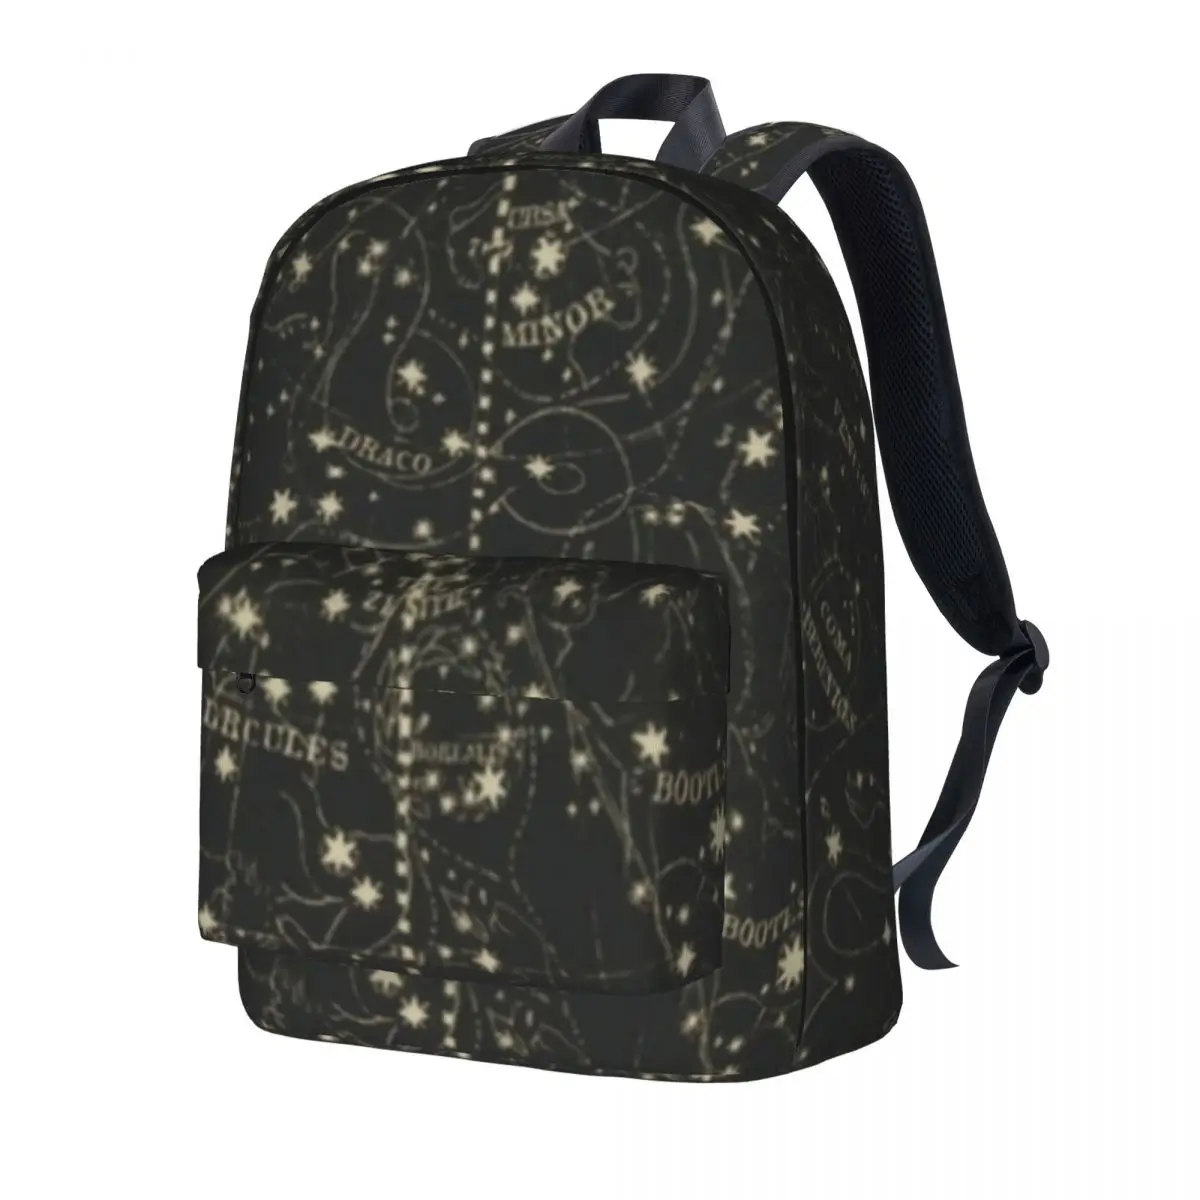 

Винтажный рюкзак с картой, астрономические походные рюкзаки в небесно-зеленом стиле, современные школьные портфели, индивидуальный большо...